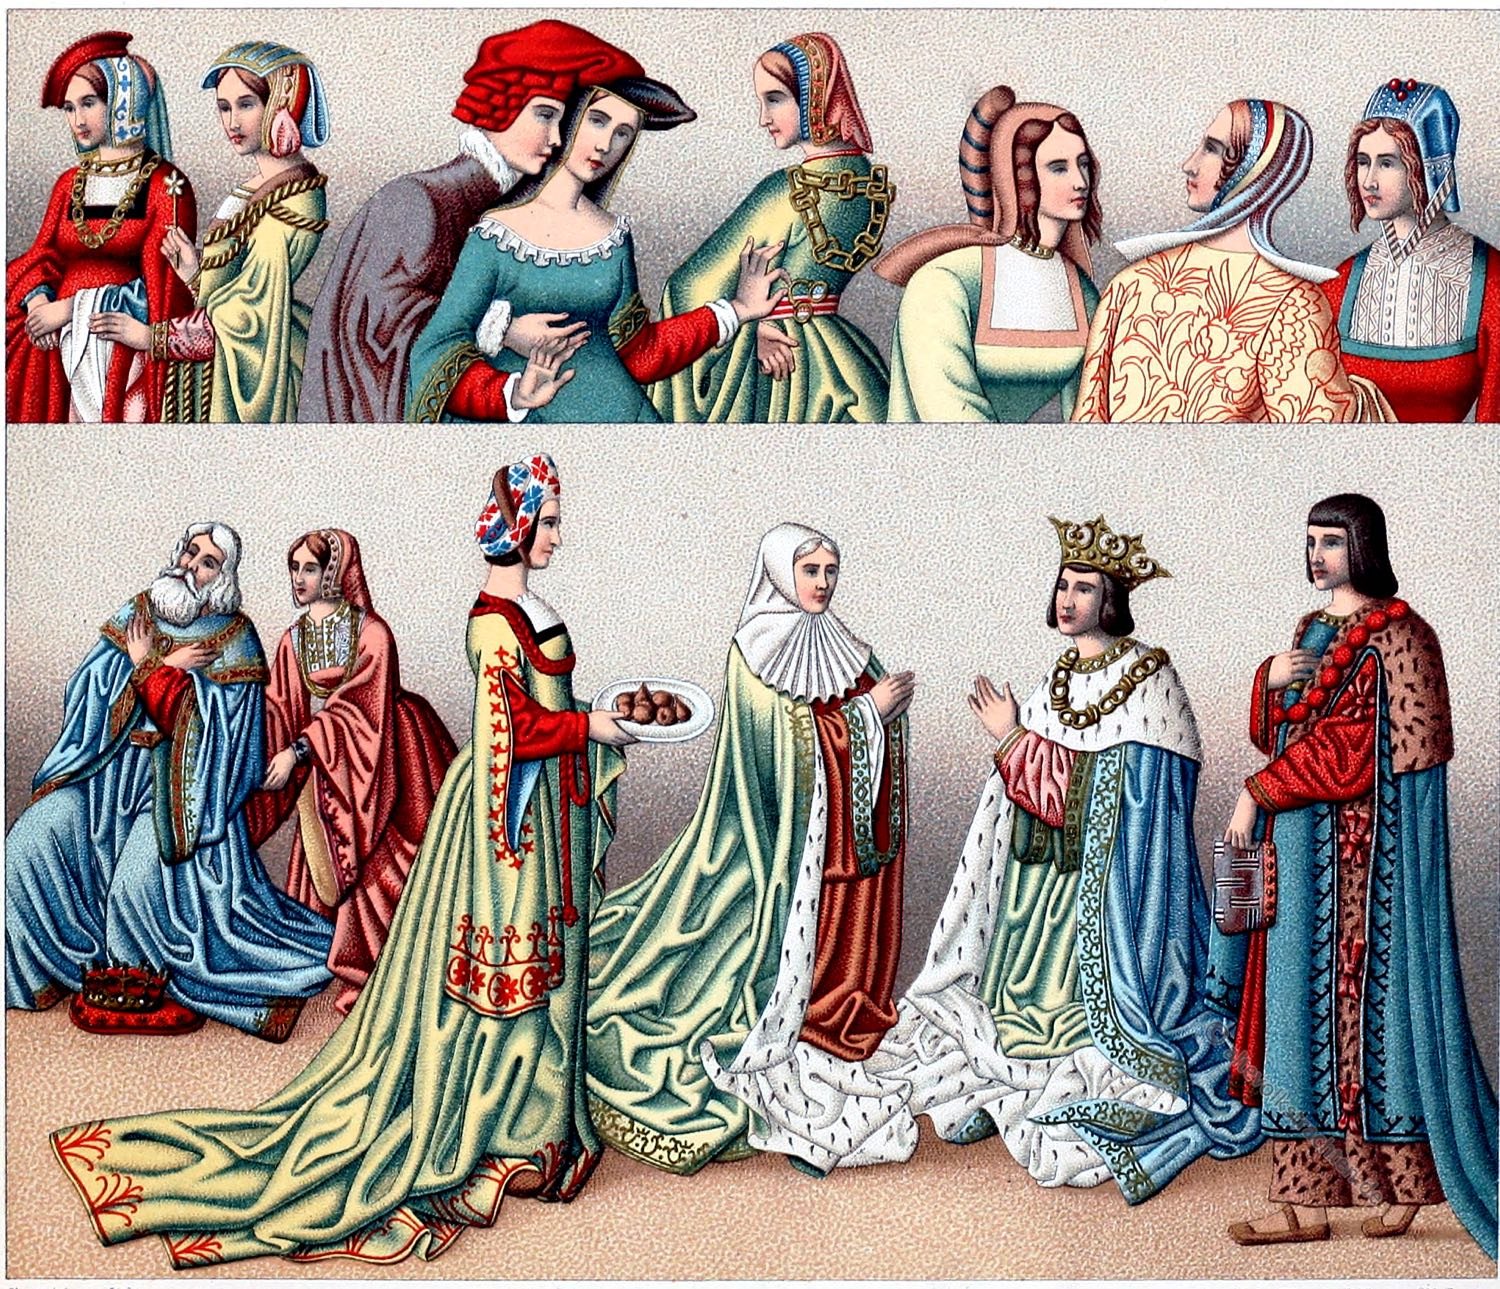 Одежда эпохи средневековья. Мода в Возрождение (XV-XVI века). Англия 15 век одежда. Ренессанс 15 века одежда. Англия 14 век одежда.